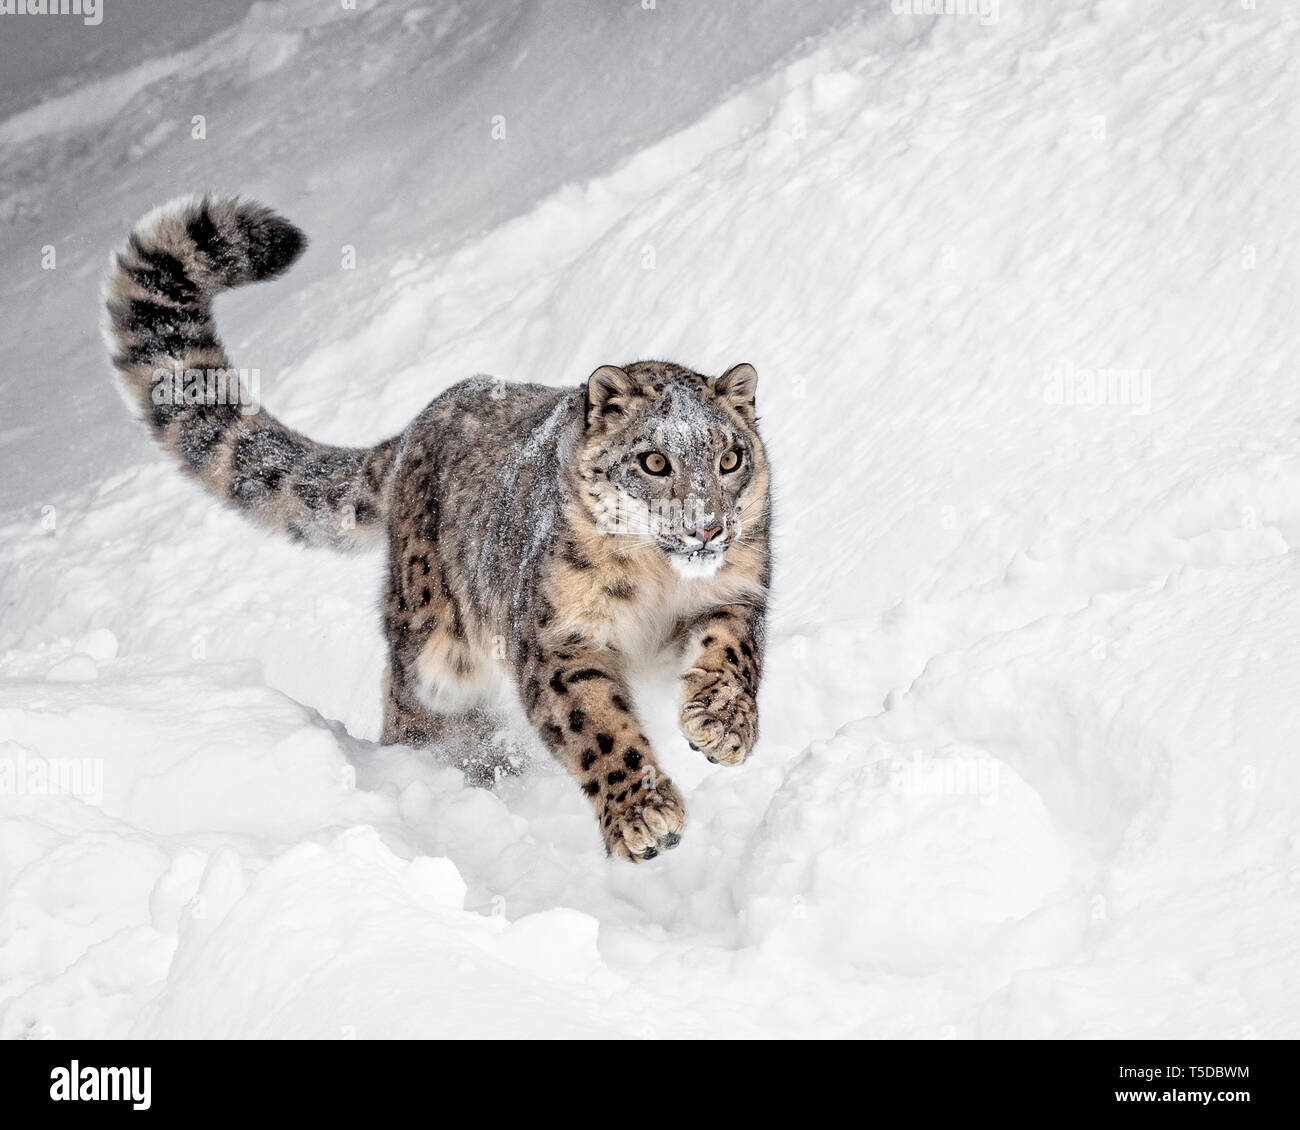 El Snow Leopard es un gran felino desde las montañas de Asia Central y del Sur en las zonas alpinas a alturas de 10.000 a 15.000 pies. Foto de stock